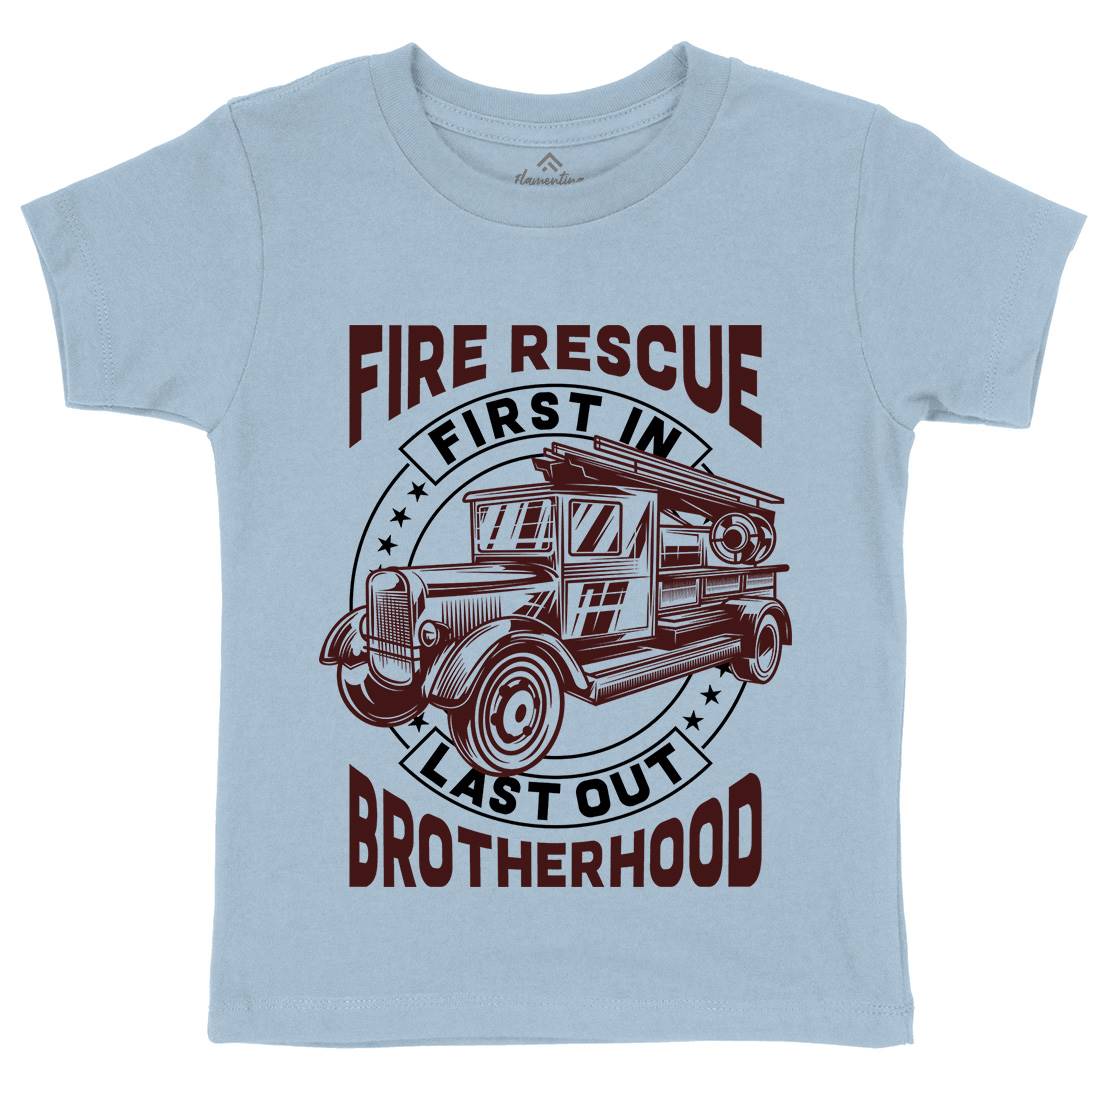 Fire Fighter Kids Crew Neck T-Shirt Firefighters B814